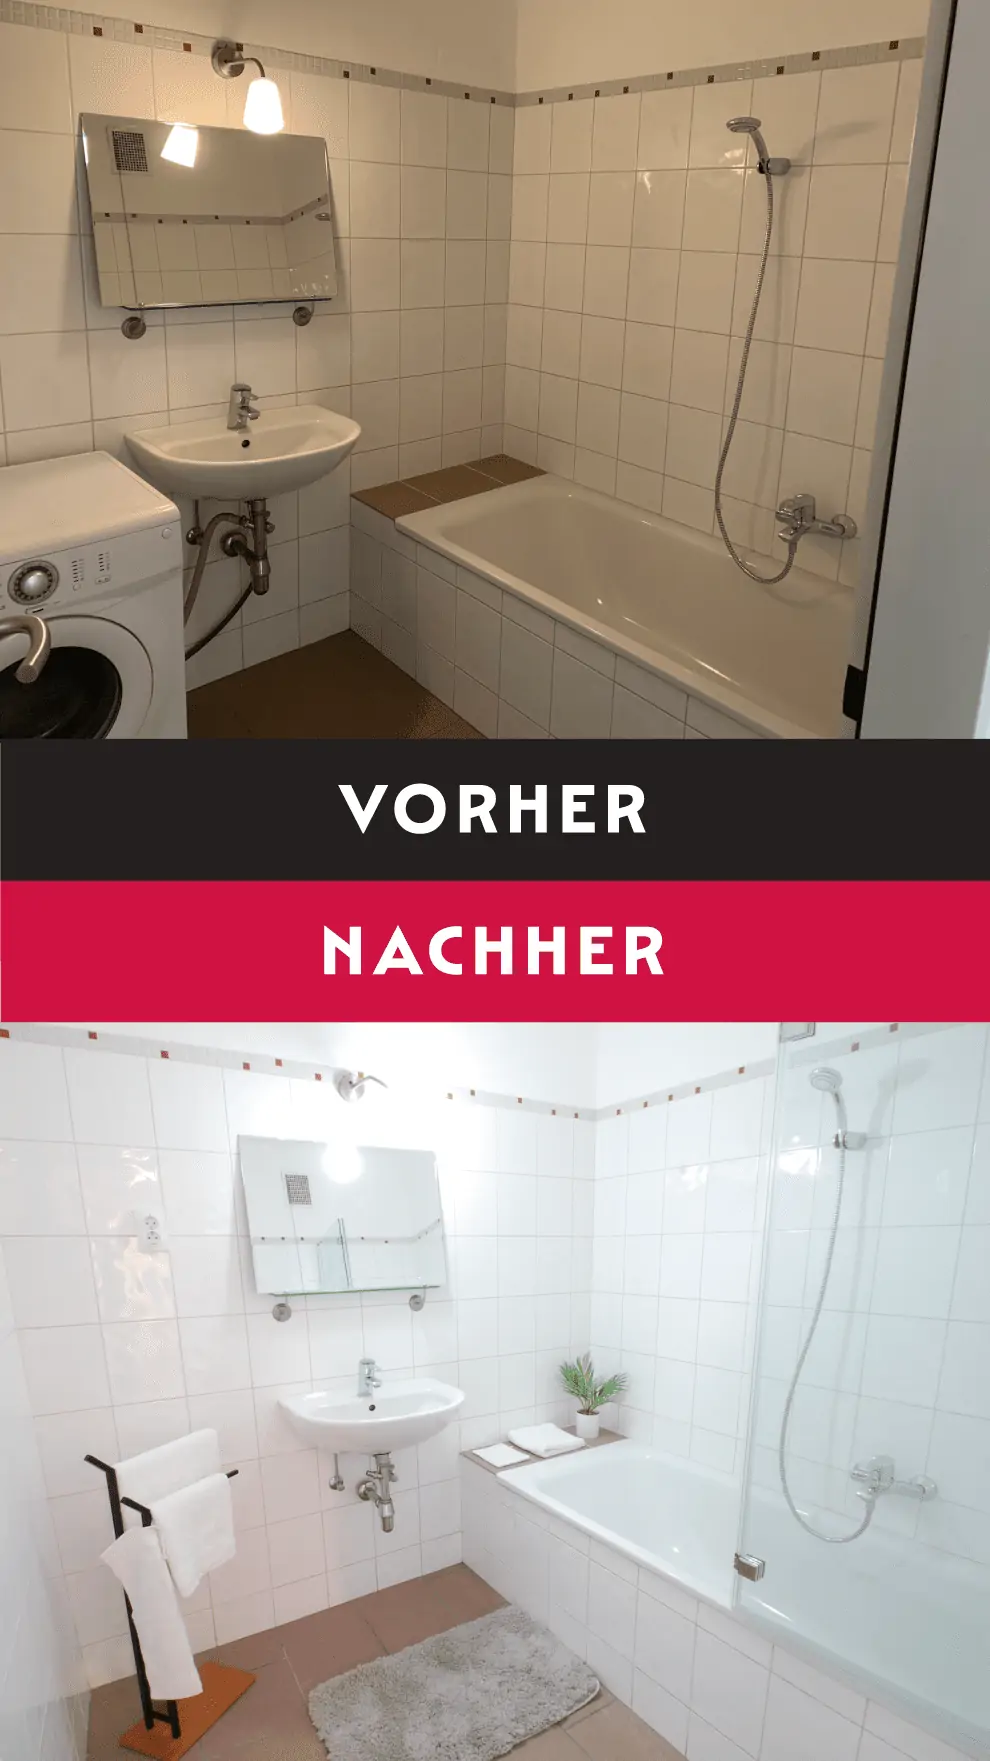 Eine Fotomontage mit Vorher-Nachher-Vergleich eines modernen Badezimmers mit weißen Fliesen und grauem Boden